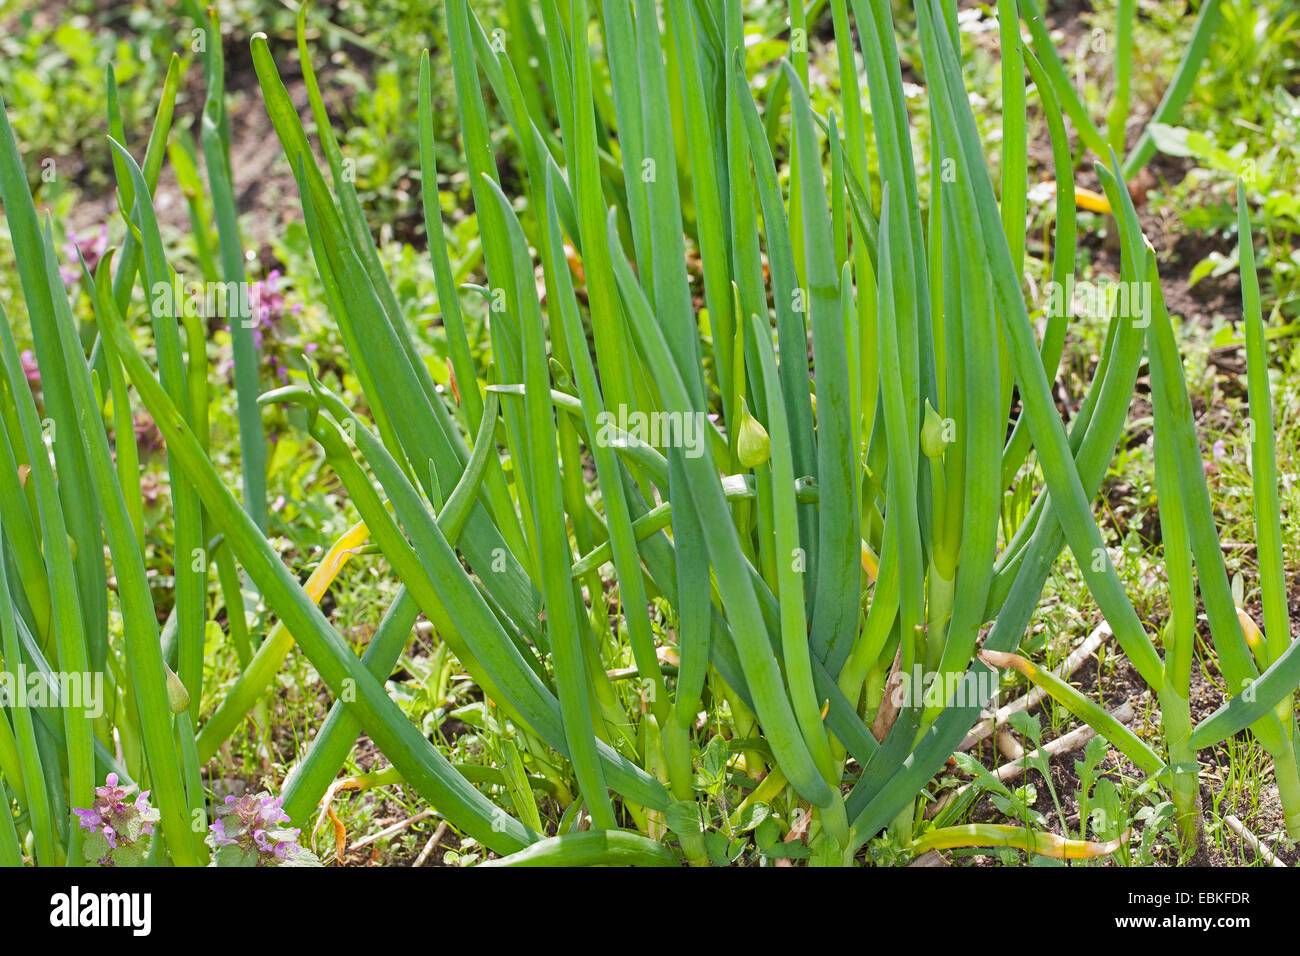 Garden onion, Bulb Onion, Common Onion (Allium cepa), plant in a garden Stock Photo